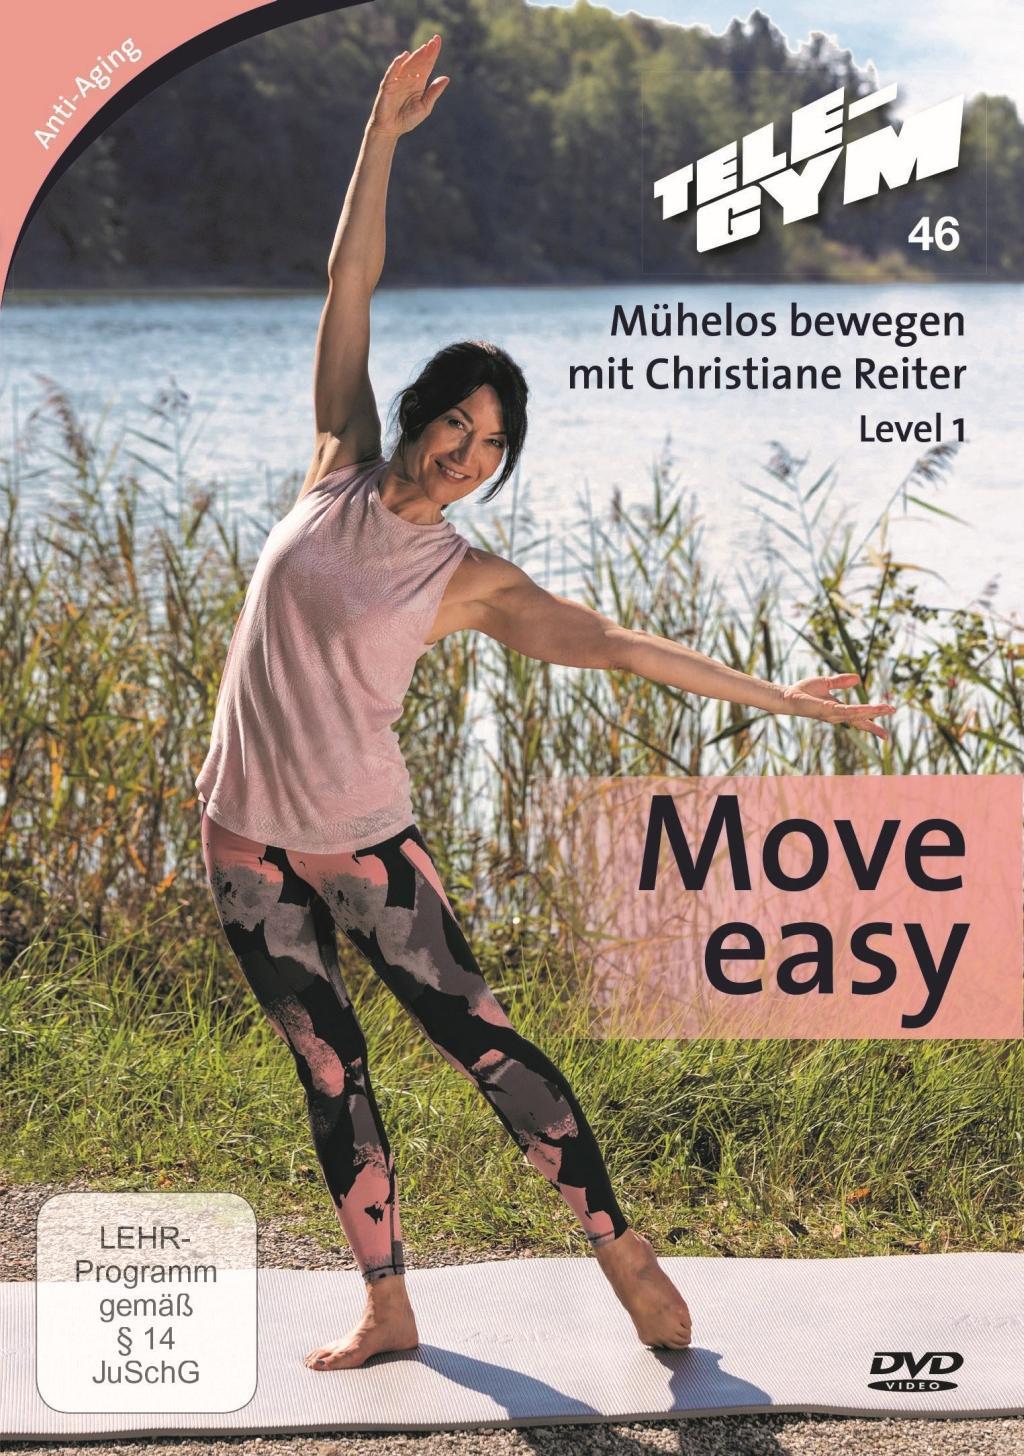 Image of Mühelos bewegen, 1 DVD